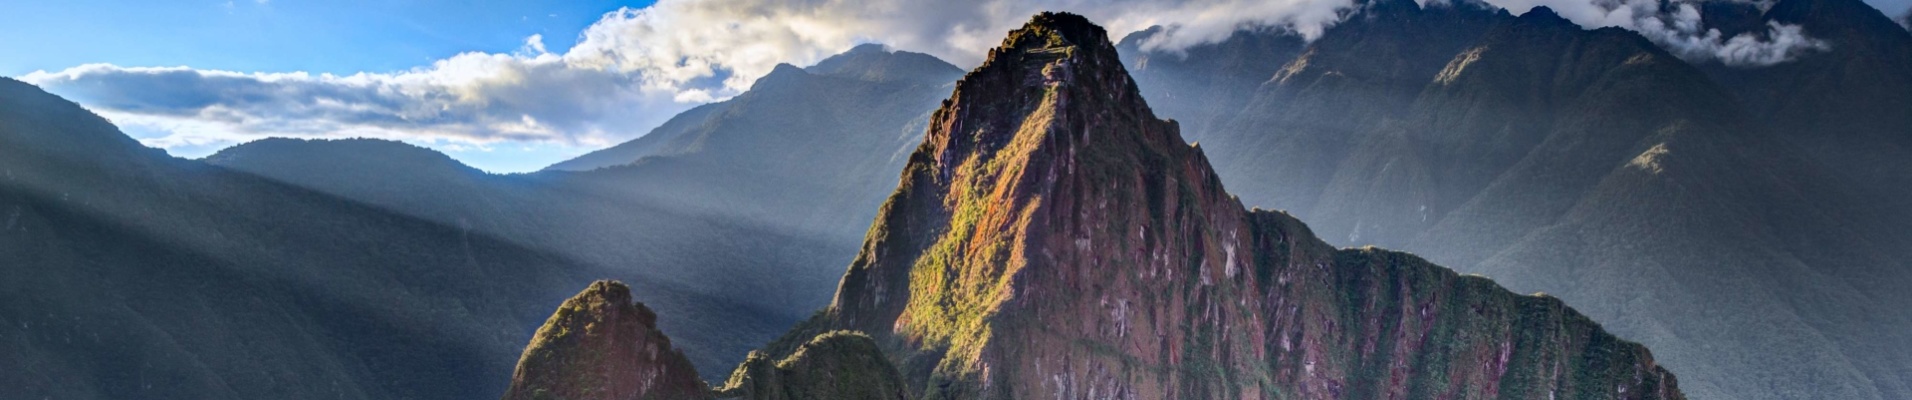 Cité Perdue, Machu Picchu, Pérou